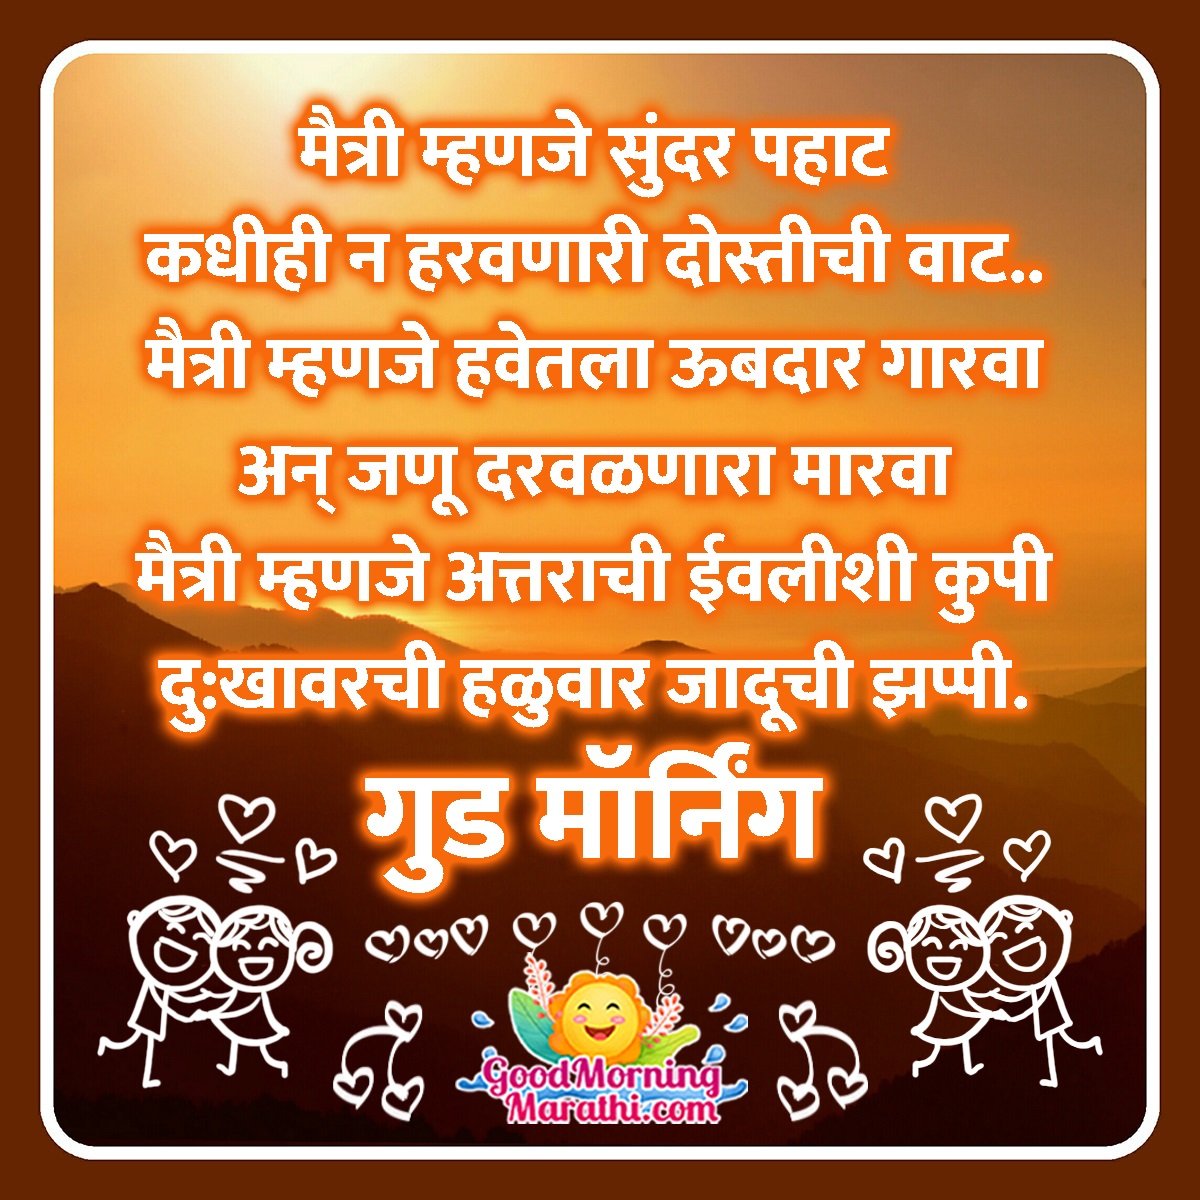 Good Morning Marathi Shayari - Good Morning Wishes & Images In Marathi